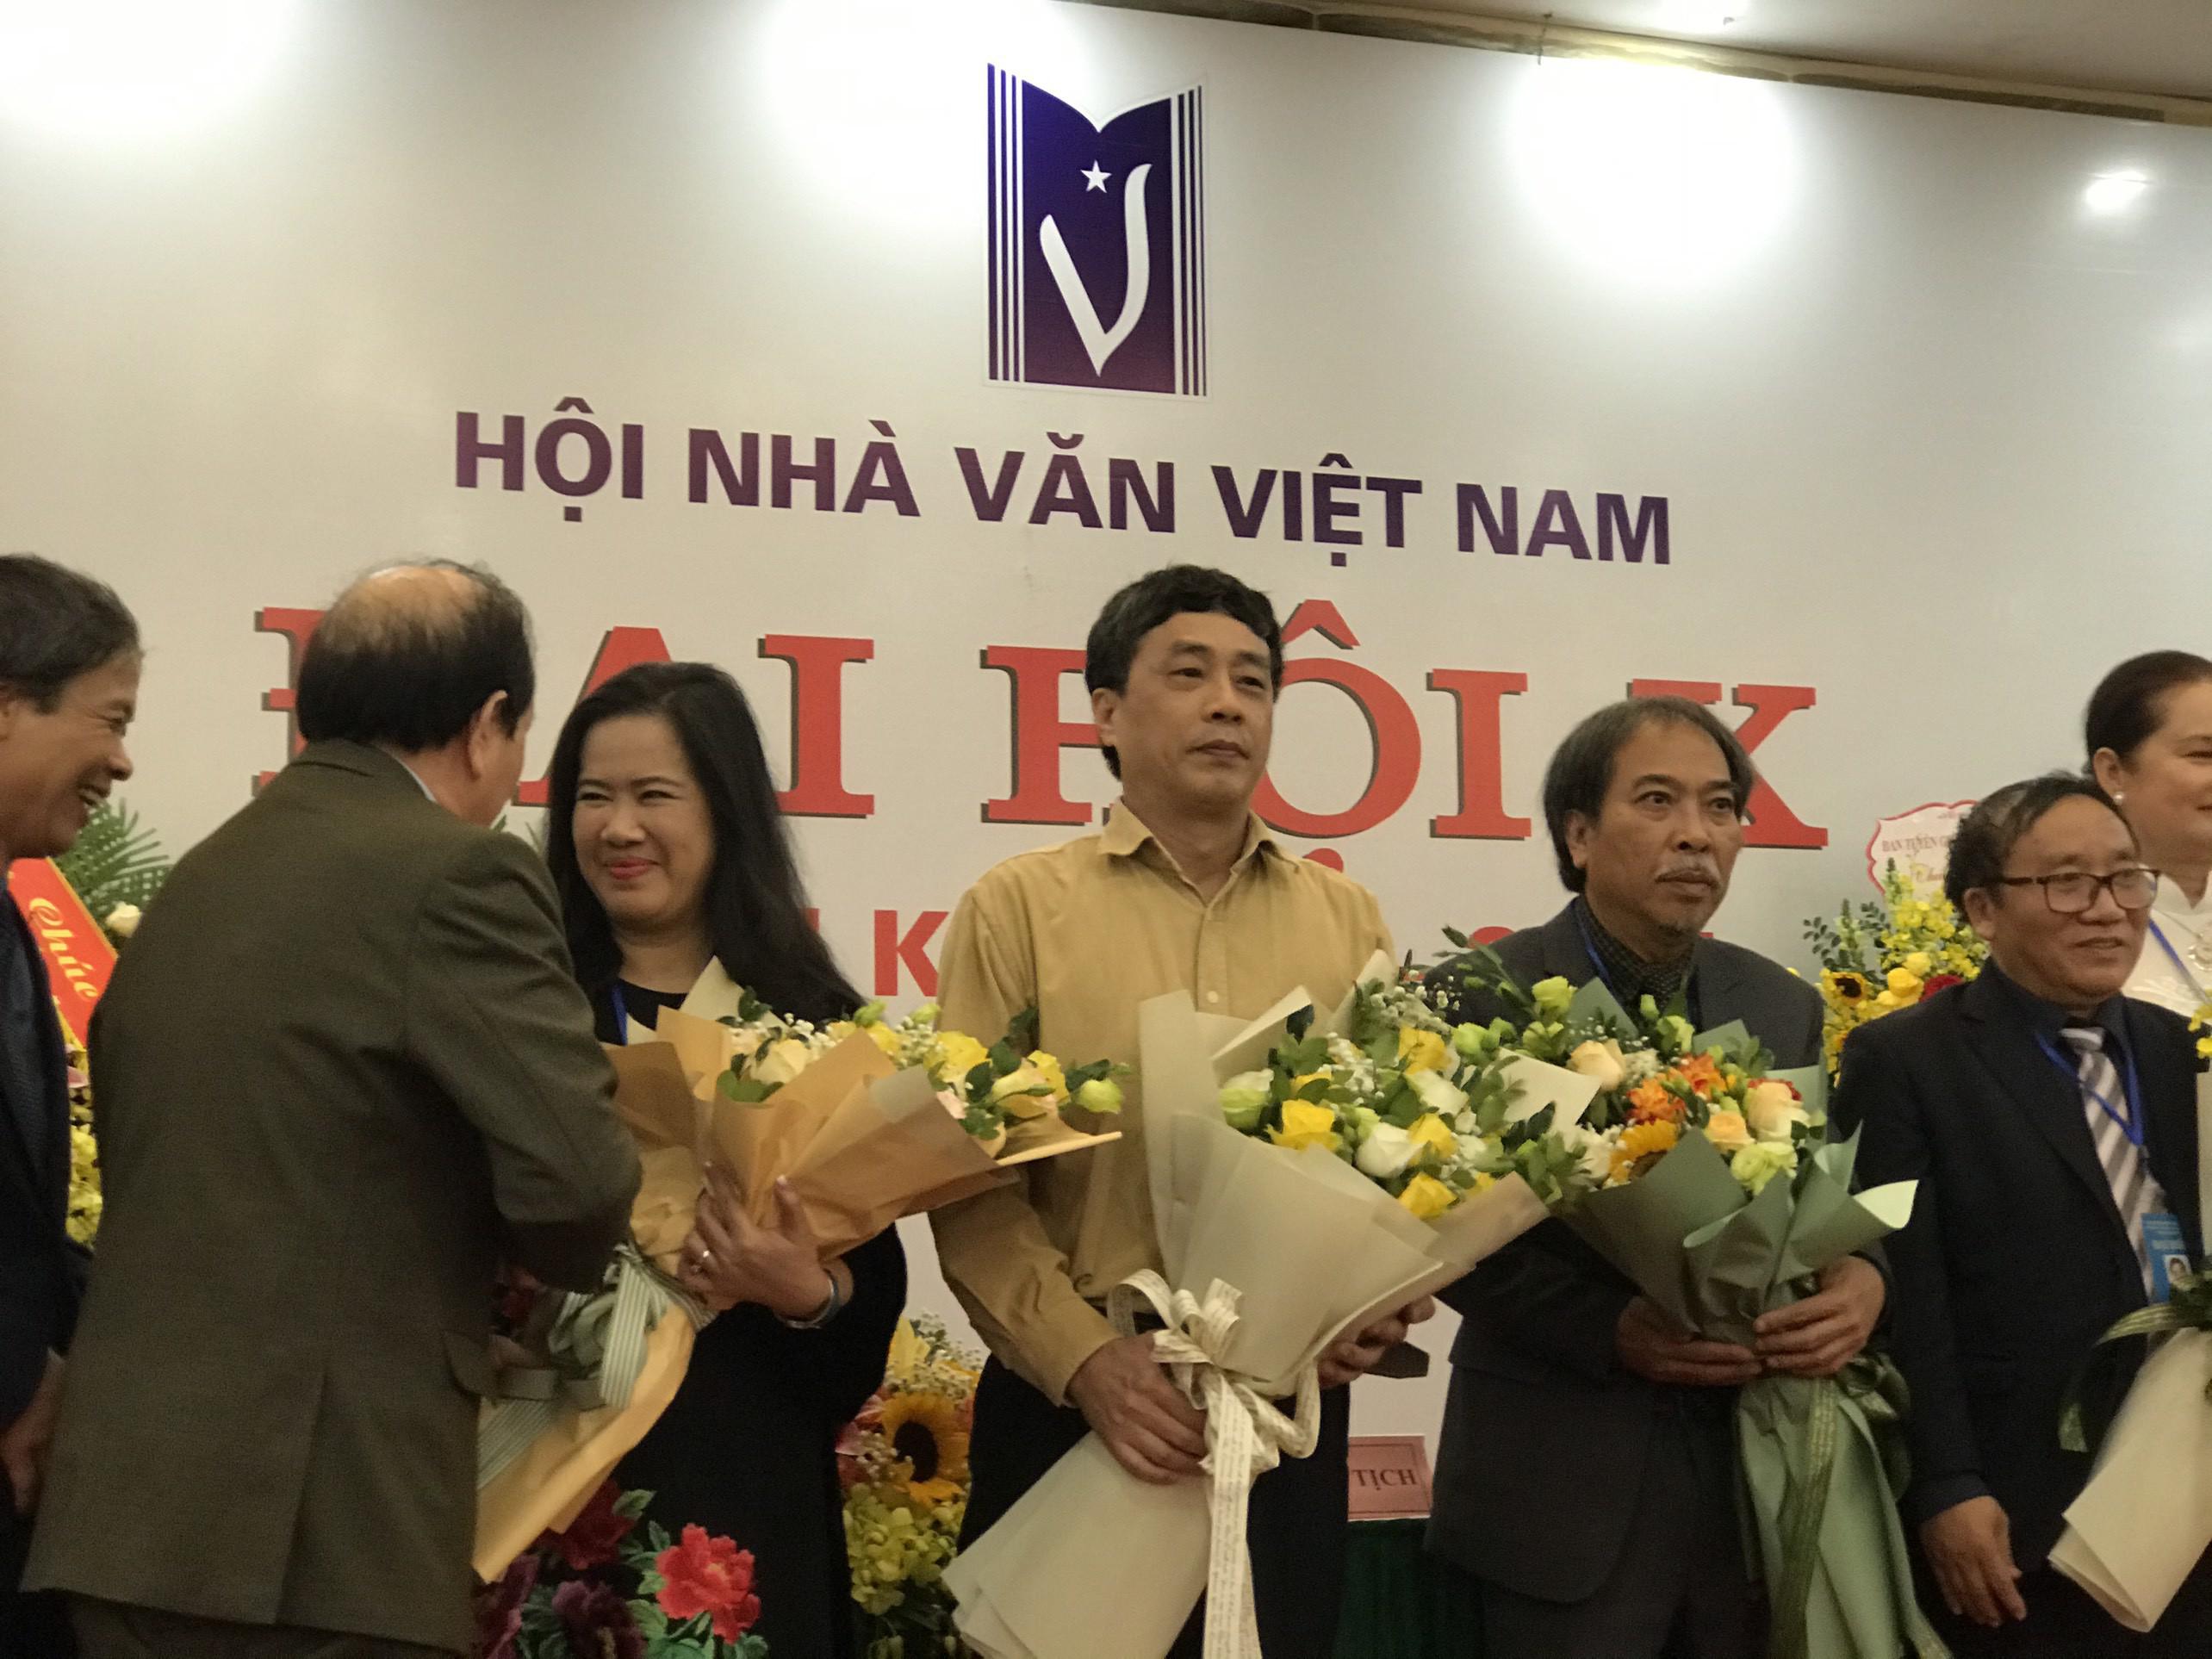 Tân chủ tịch Hội Nhà văn Nguyễn Quang Thiều: “Cuộc chuyển giao thế hệ rất đẹp, tôi không mong gì hơn thế” - 2